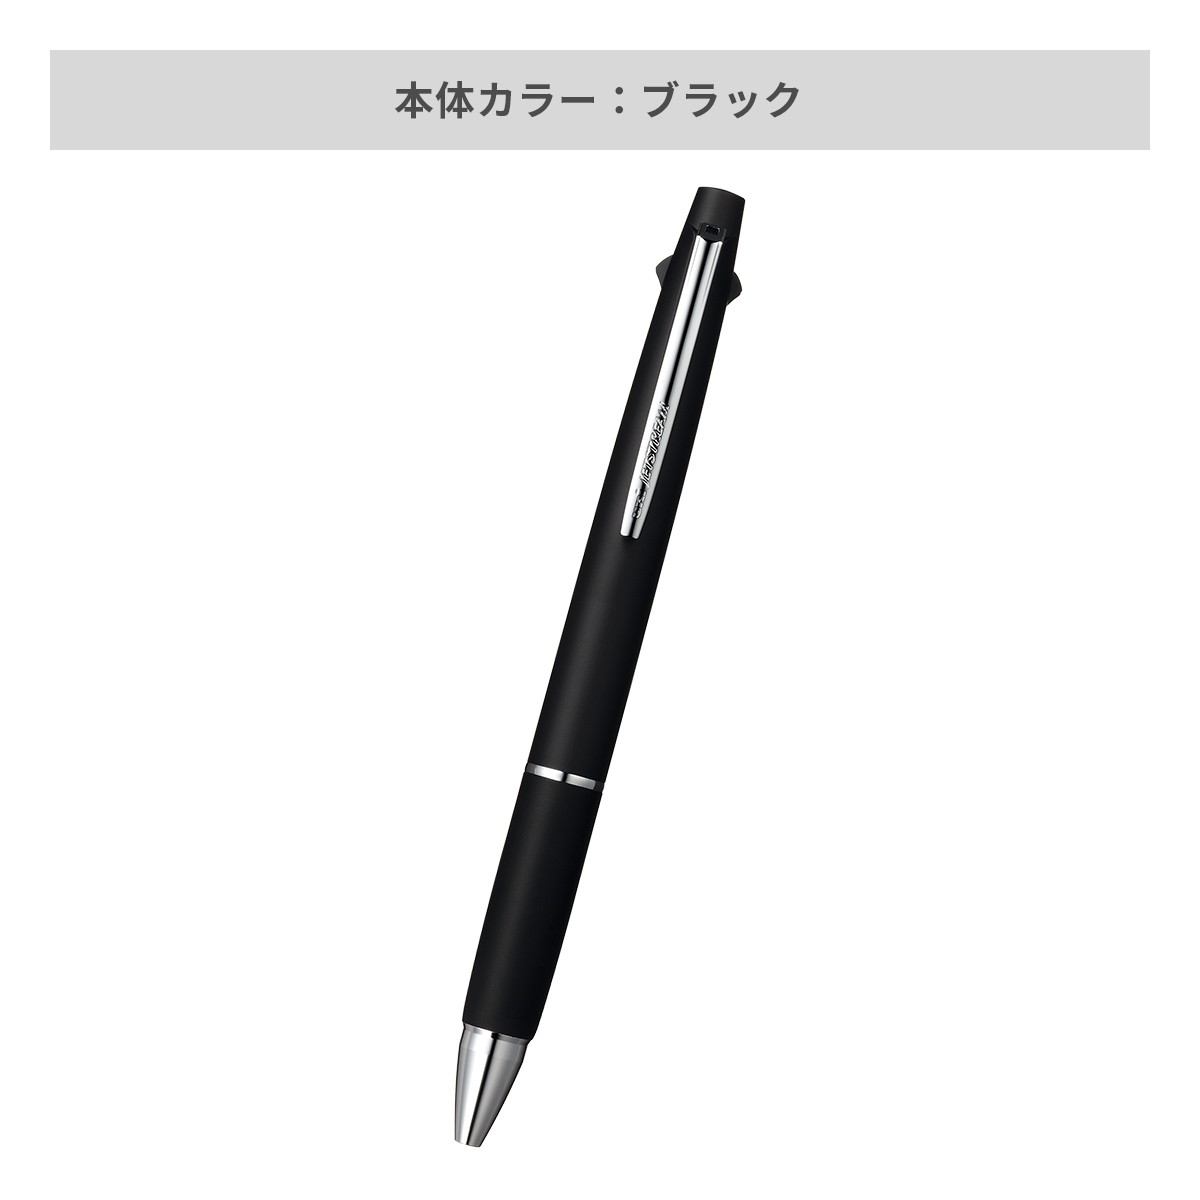 【短納期】三菱鉛筆 ジェットストリーム 多機能ペン 2&1 0.7mm【多機能ペン / レーザー彫刻】 画像3